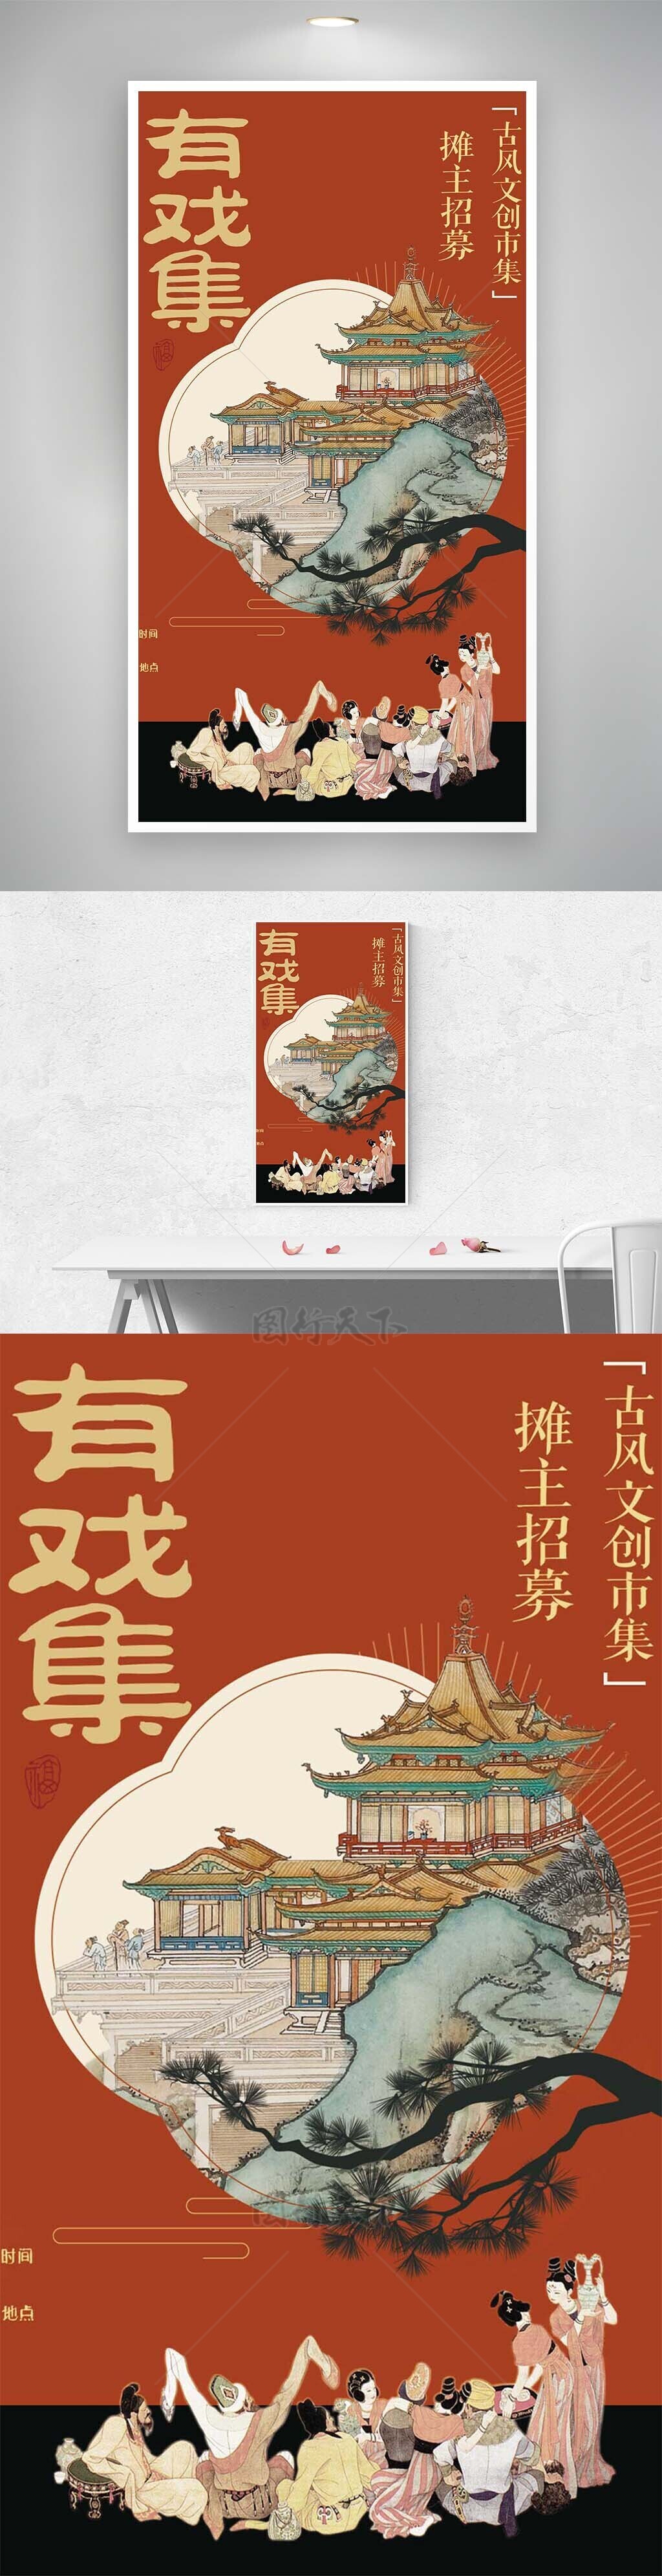 古风文创市集传统中国红国画背景海报